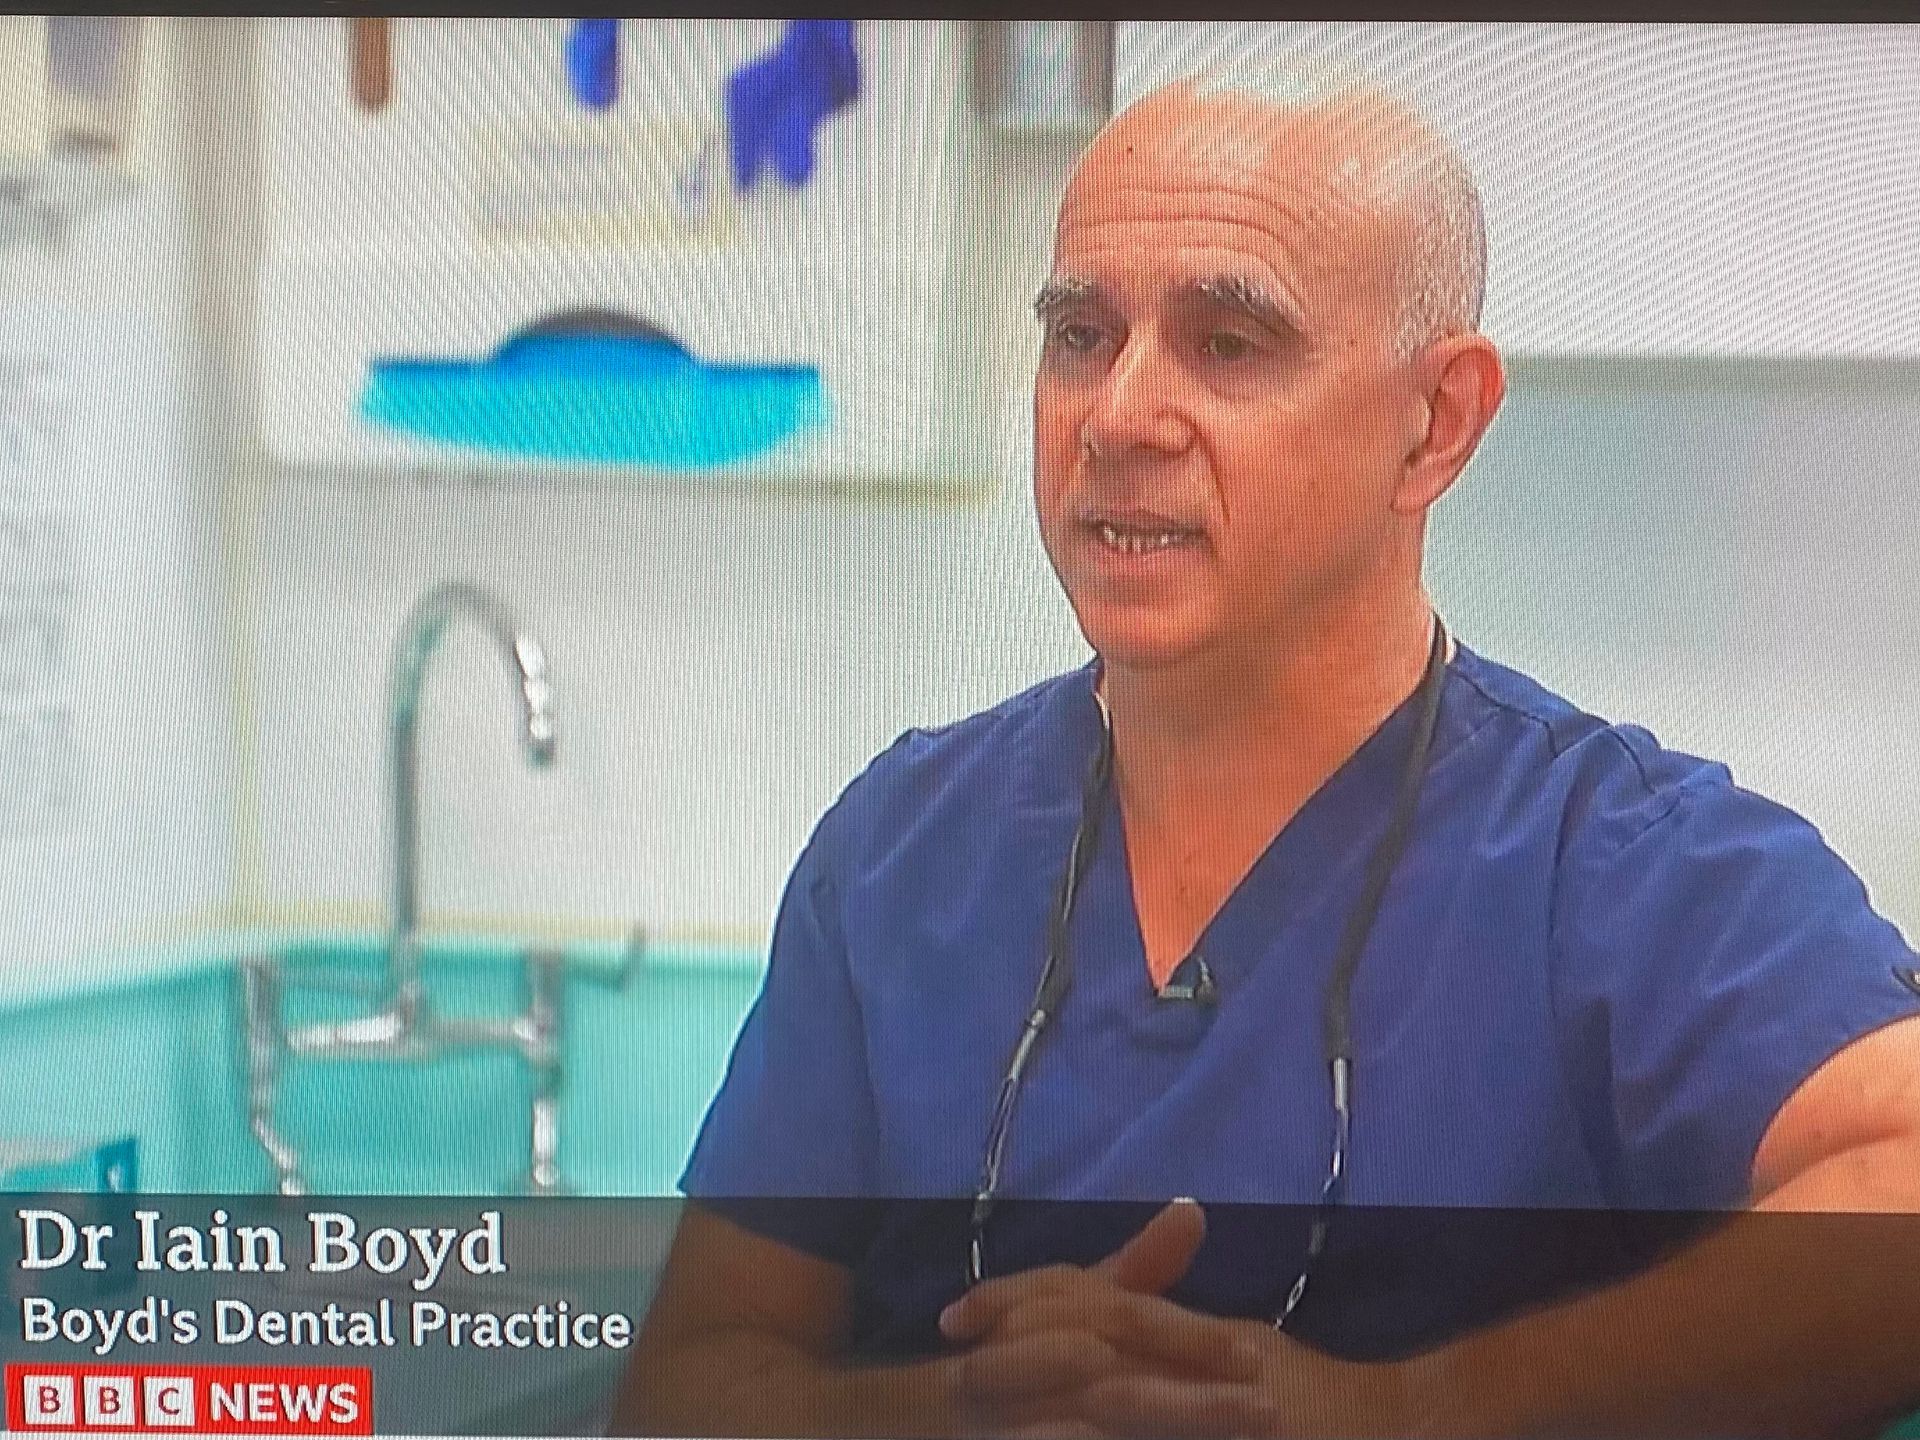 Dr Iain Boyd Dentist  Boyds Dental Practice BBC News